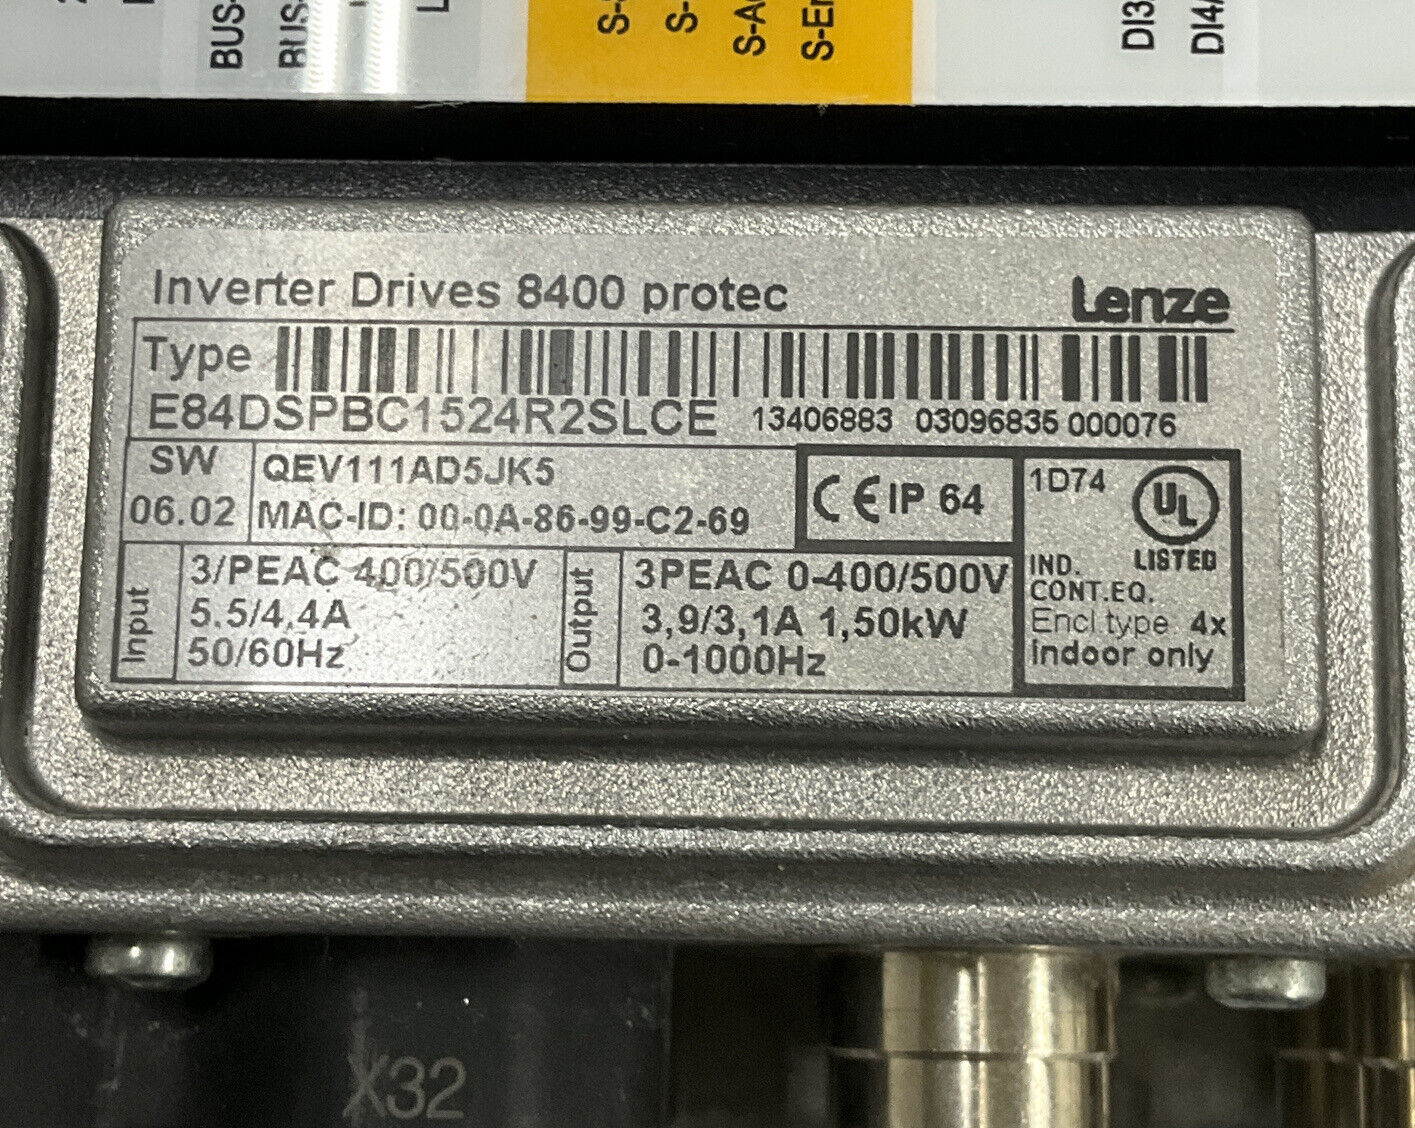 Lenze E84DSPBC1524R2SLCE 8400 Protec Inverter Drive (OV123) - 0